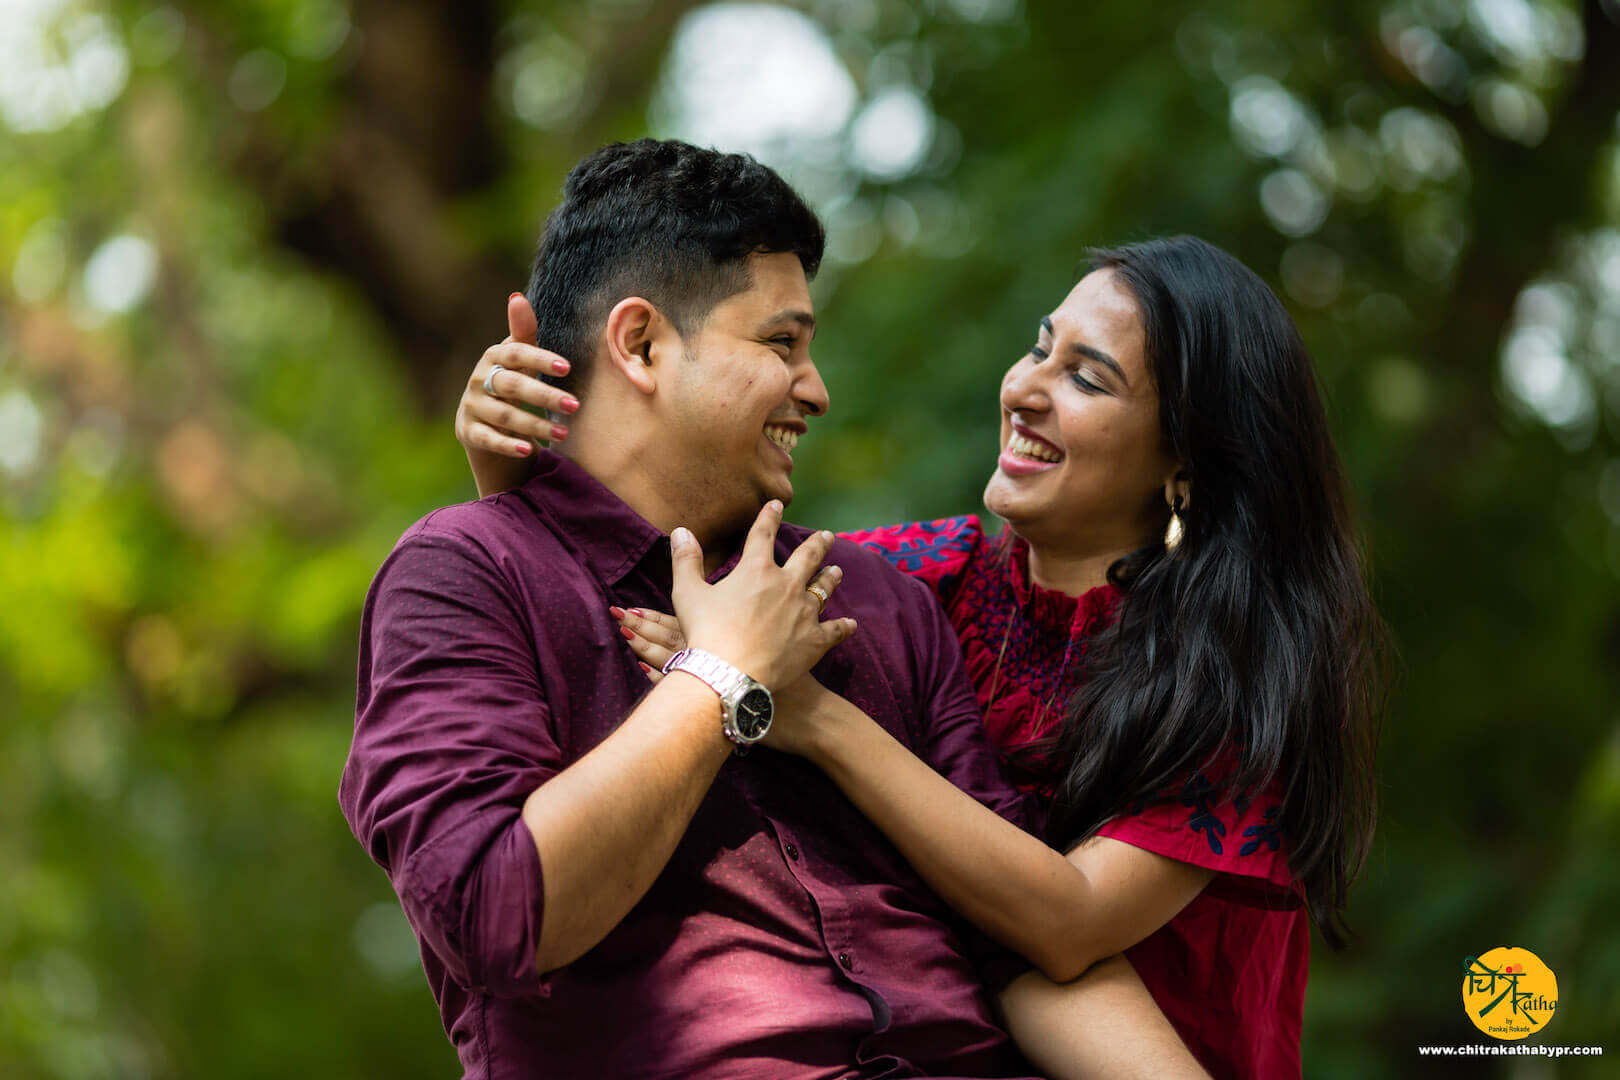 Pre Wedding shoot Idea - Trends 2020 - Chitrakatha by Pankaj Rokade